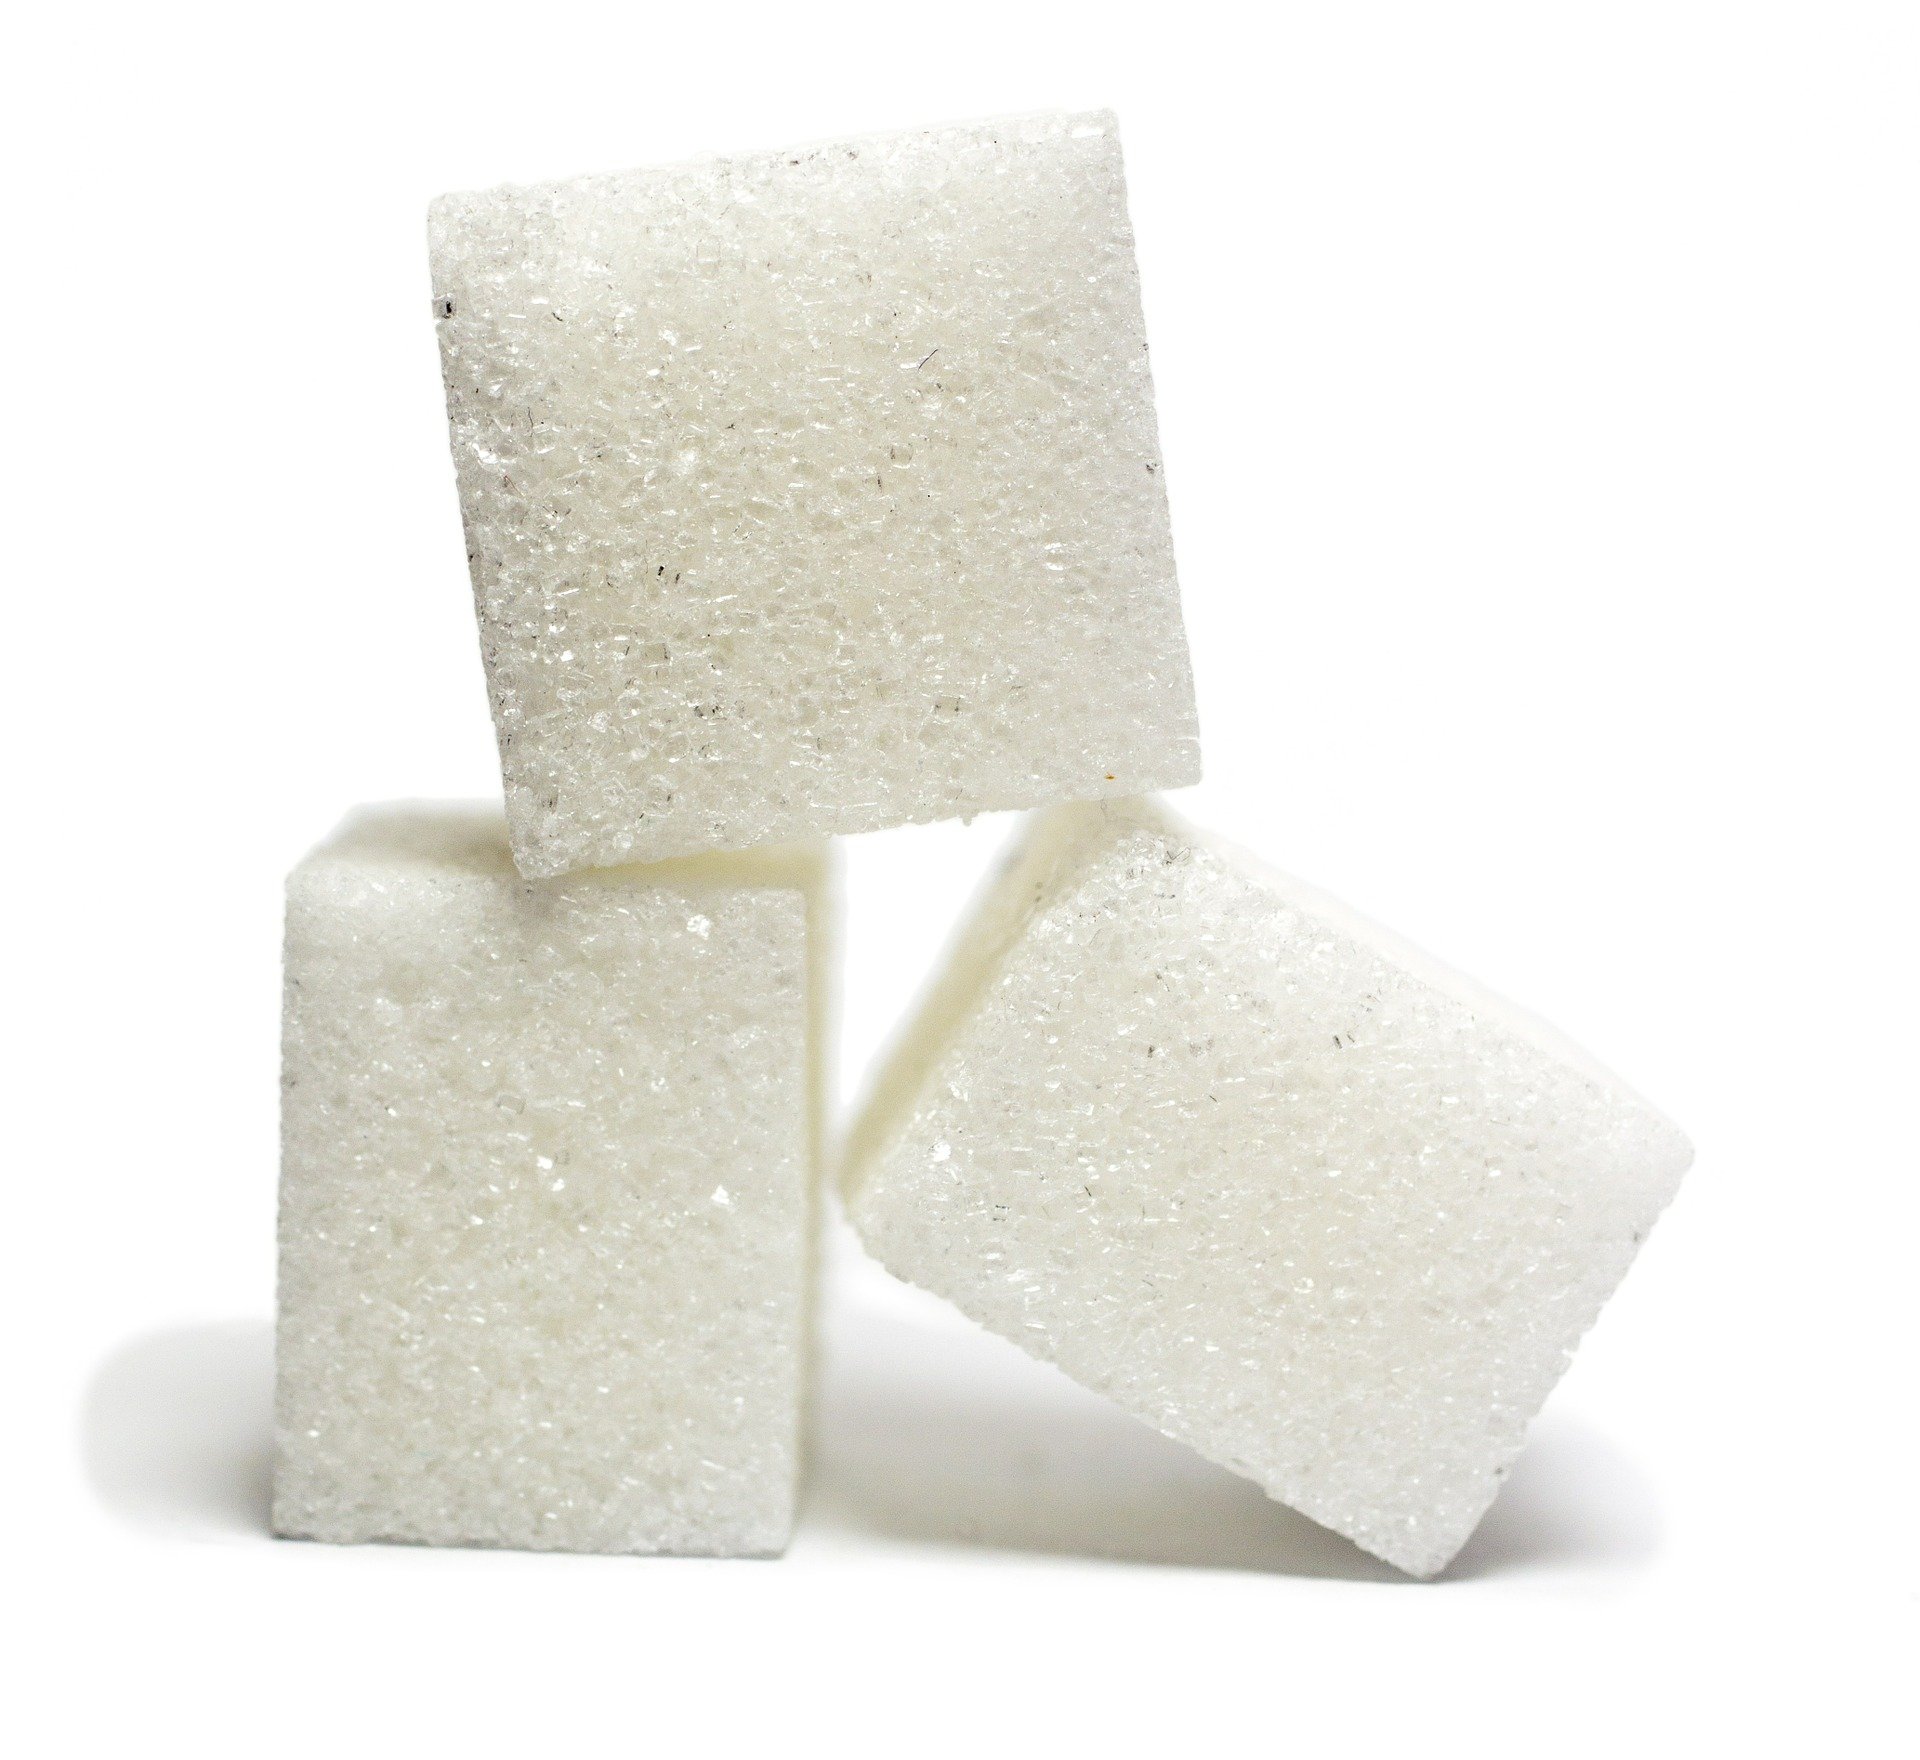 Un estudi revela la relació entre el sucre i la proliferació del càncer